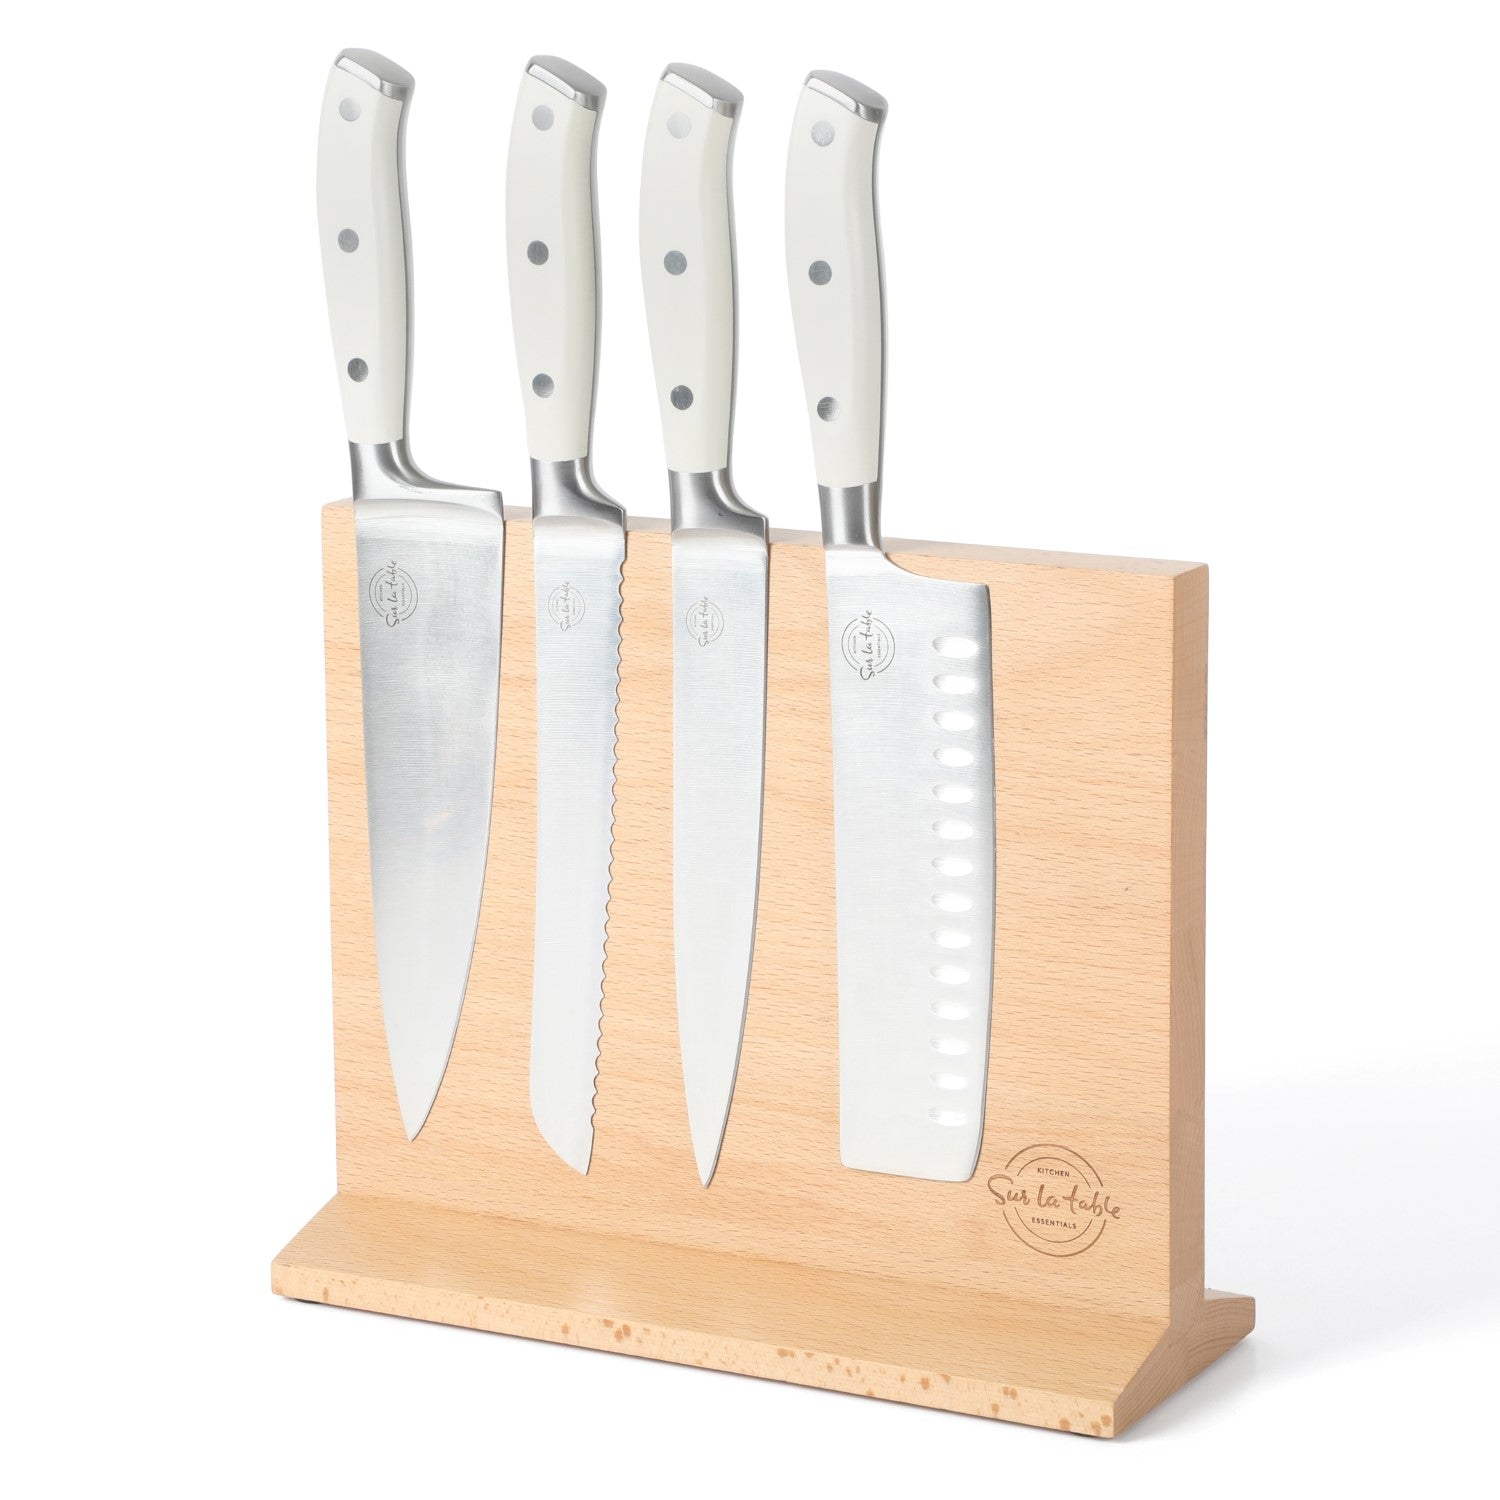 5-piece Essential Kitchen Knife Set - Chefs Delight